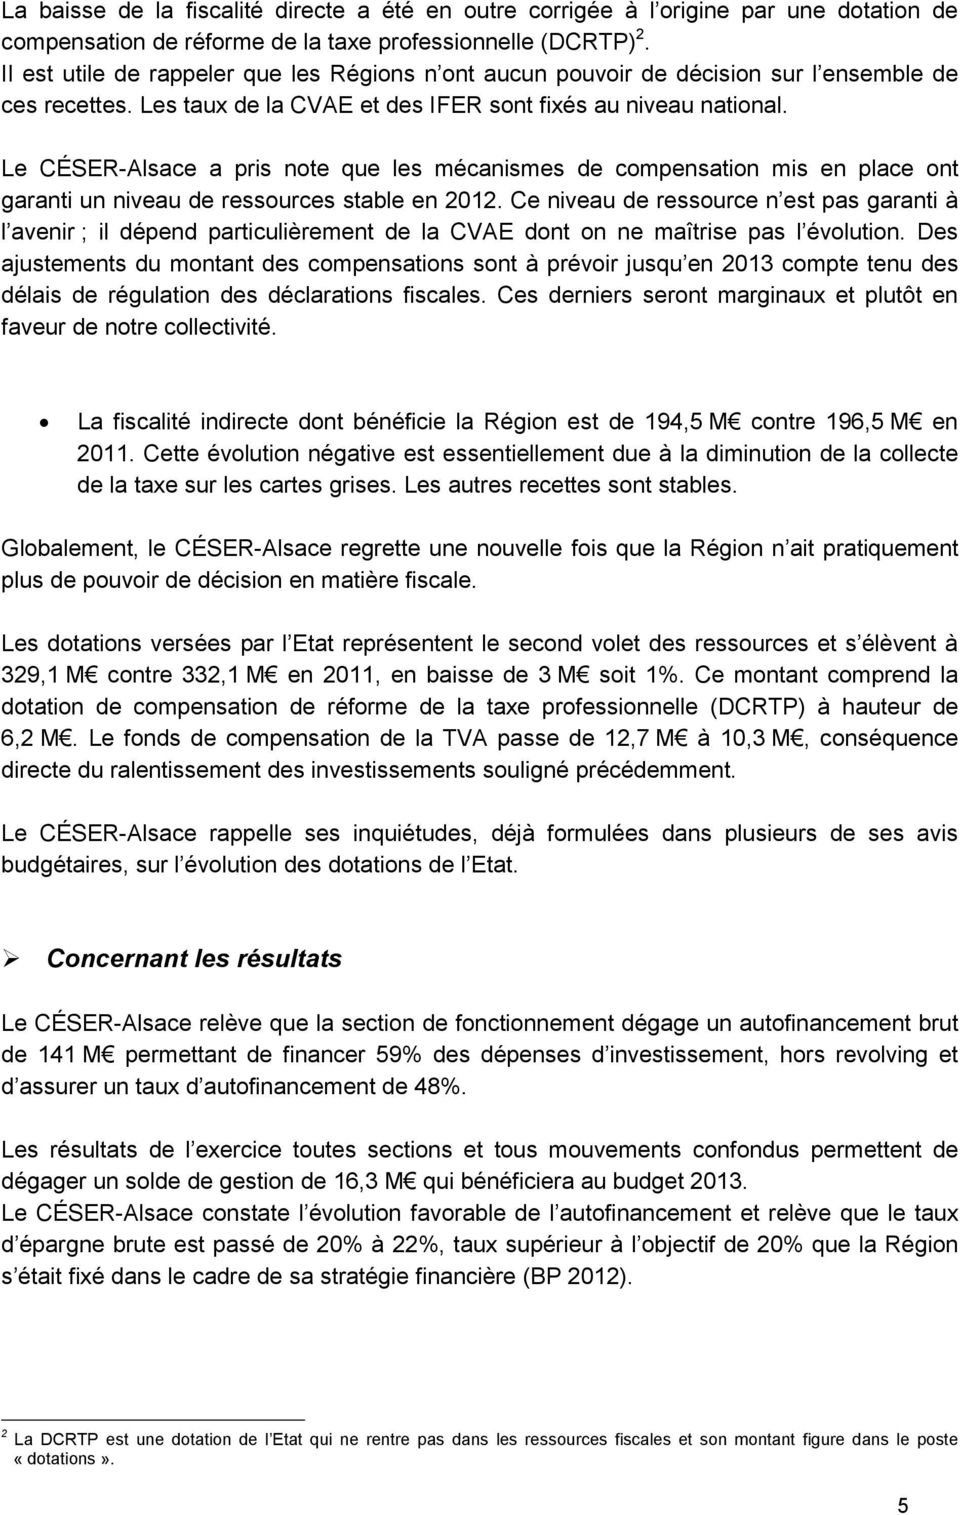 Le CÉSER-Alsace a pris note que les mécanismes de compensation mis en place ont garanti un niveau de ressources stable en 2012.